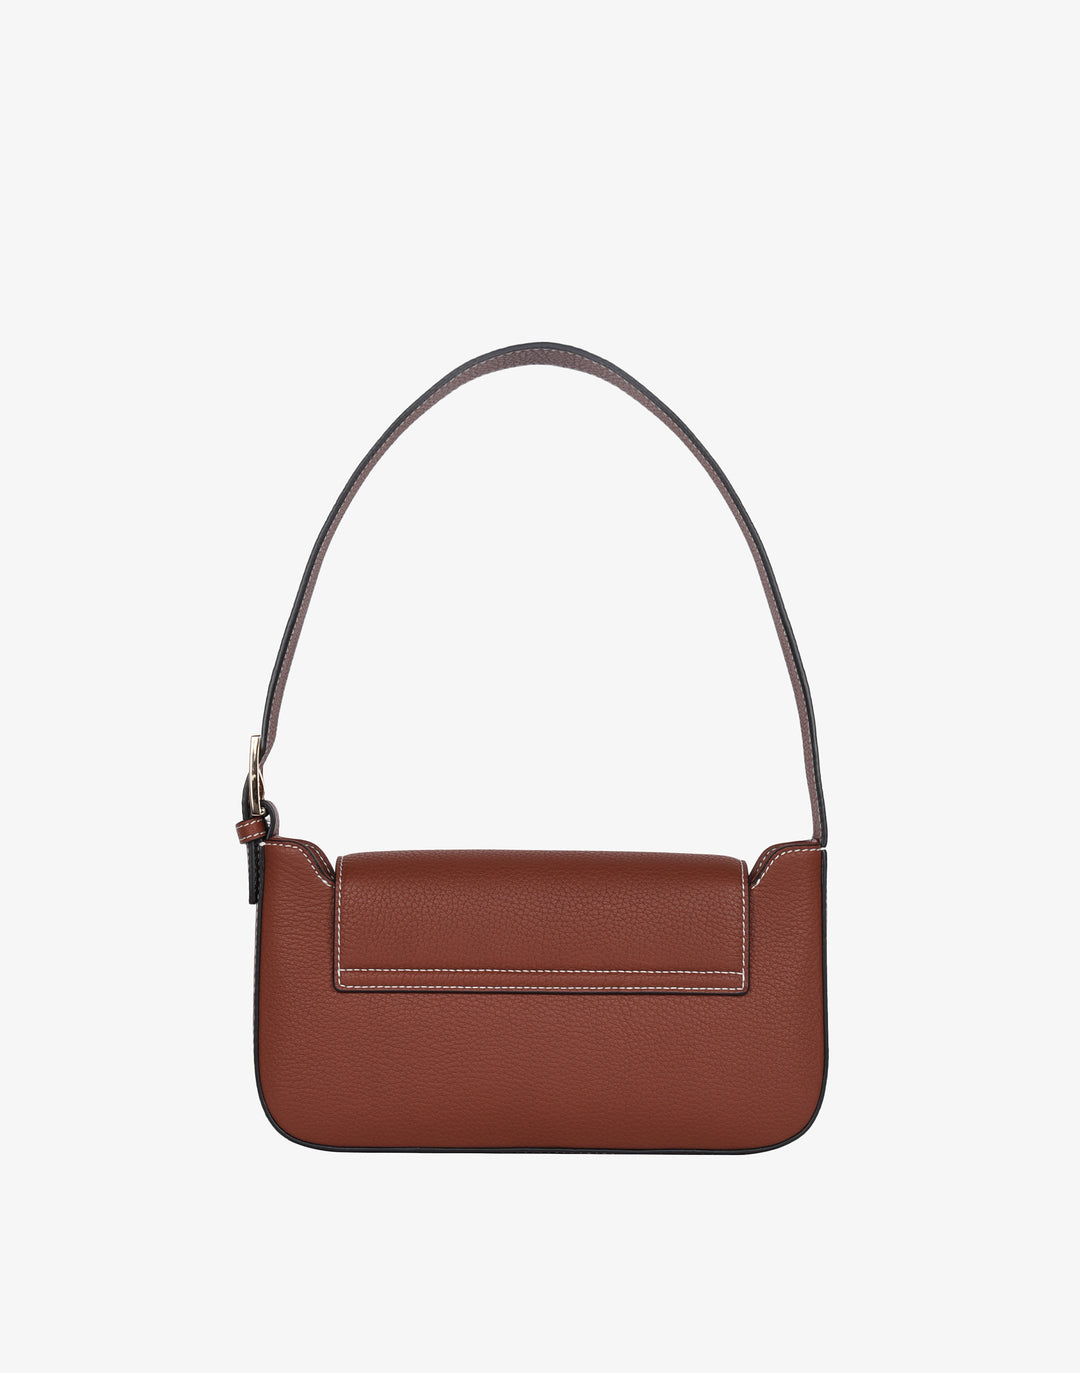 hyer goods 90s baguette shoulder bag with buckle tan brown#color_saddle-broan